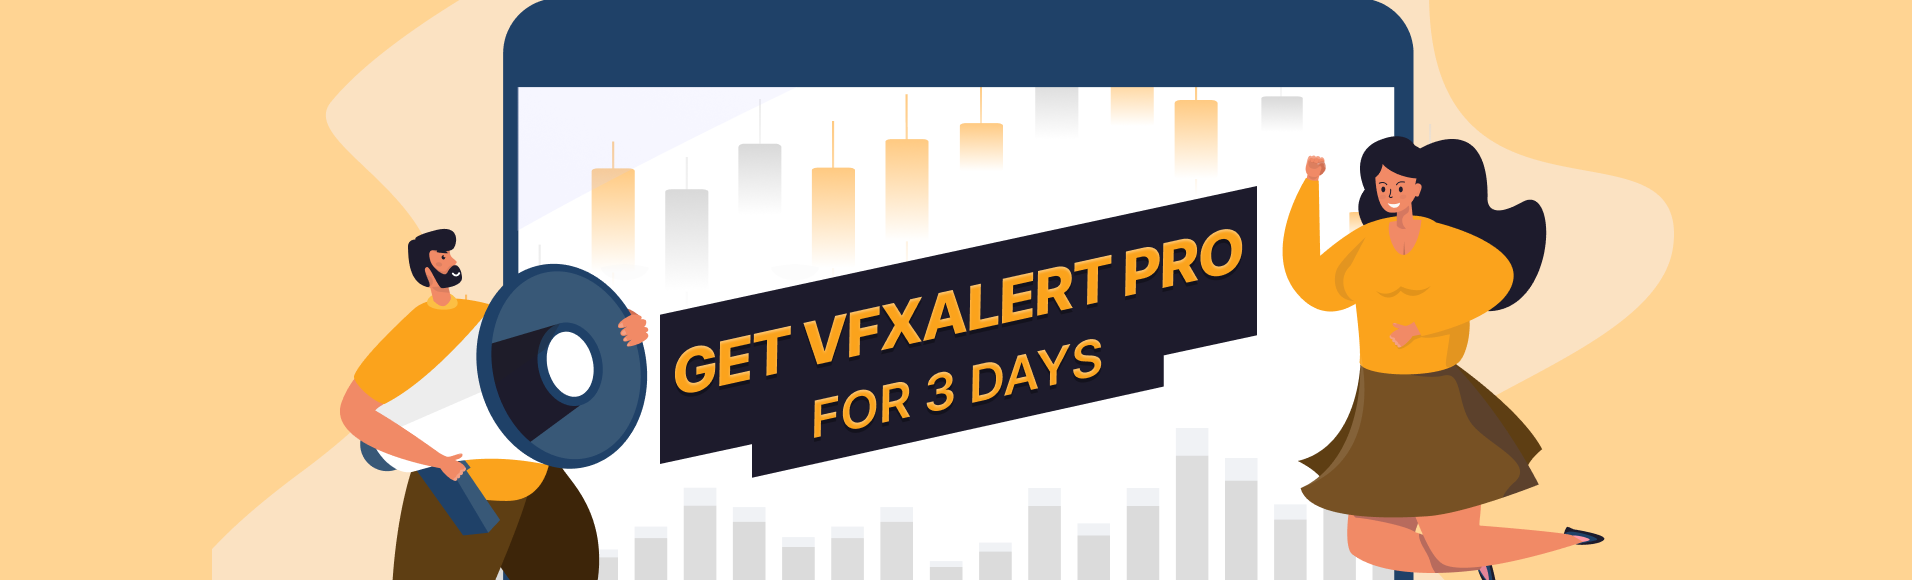 Условия акции  vfxAlert PRO на 3 дня 